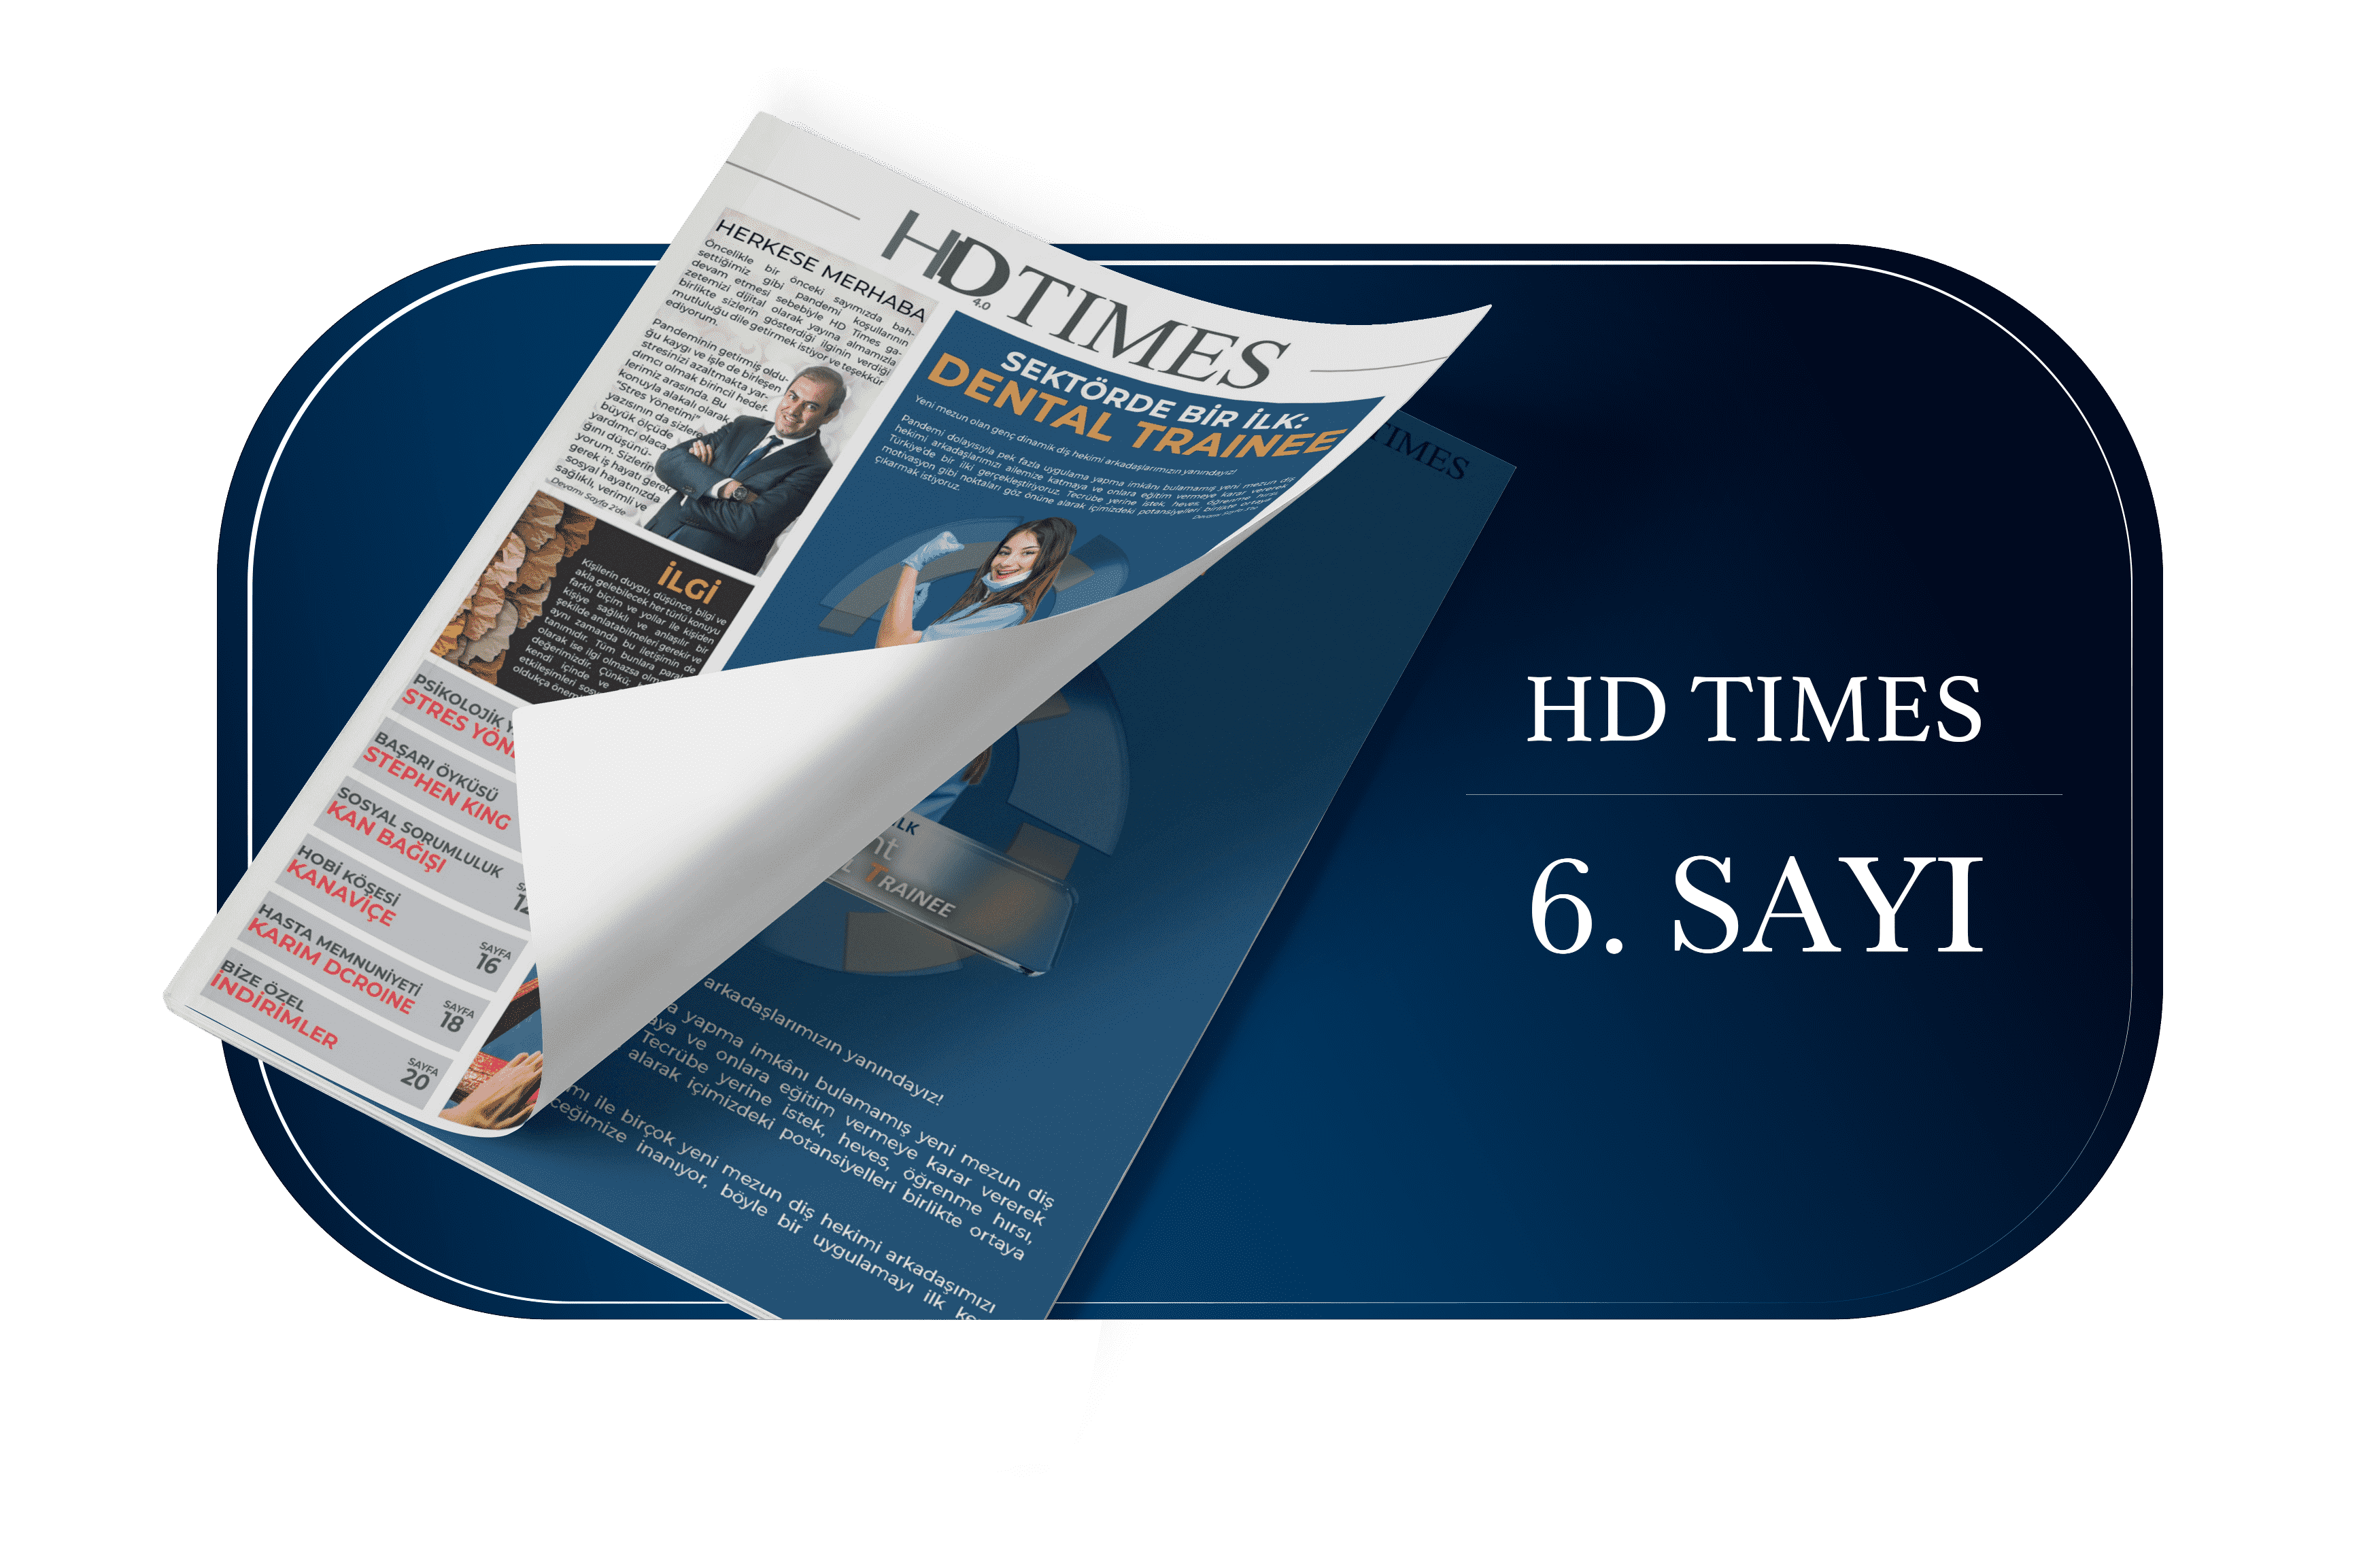 6.sayi Publicaciones De HD Times